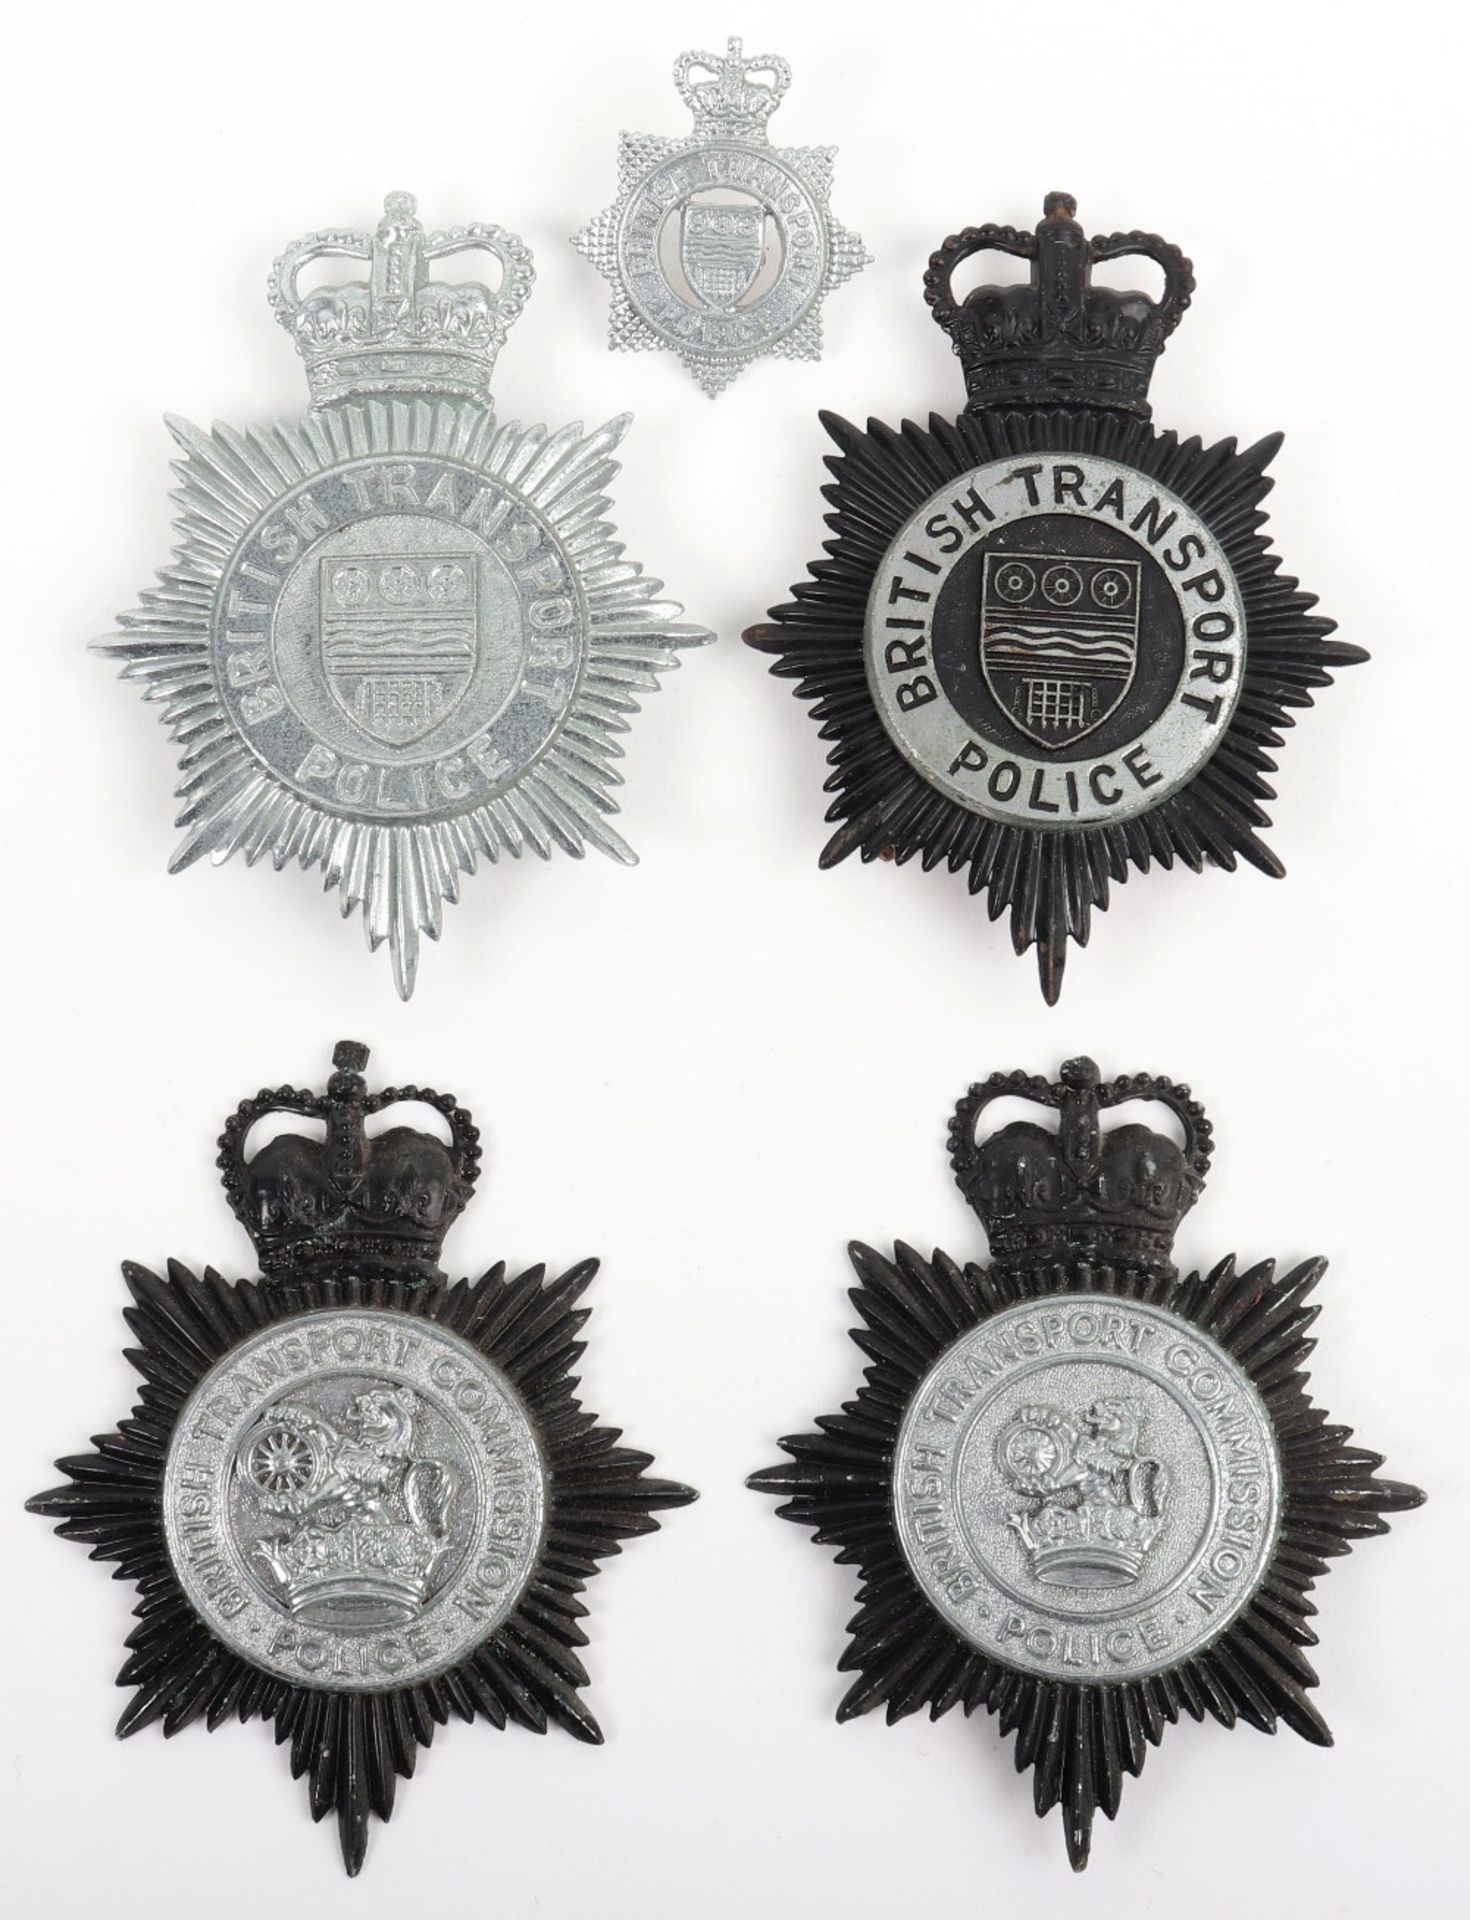 Obsolete British Transport Police Badges